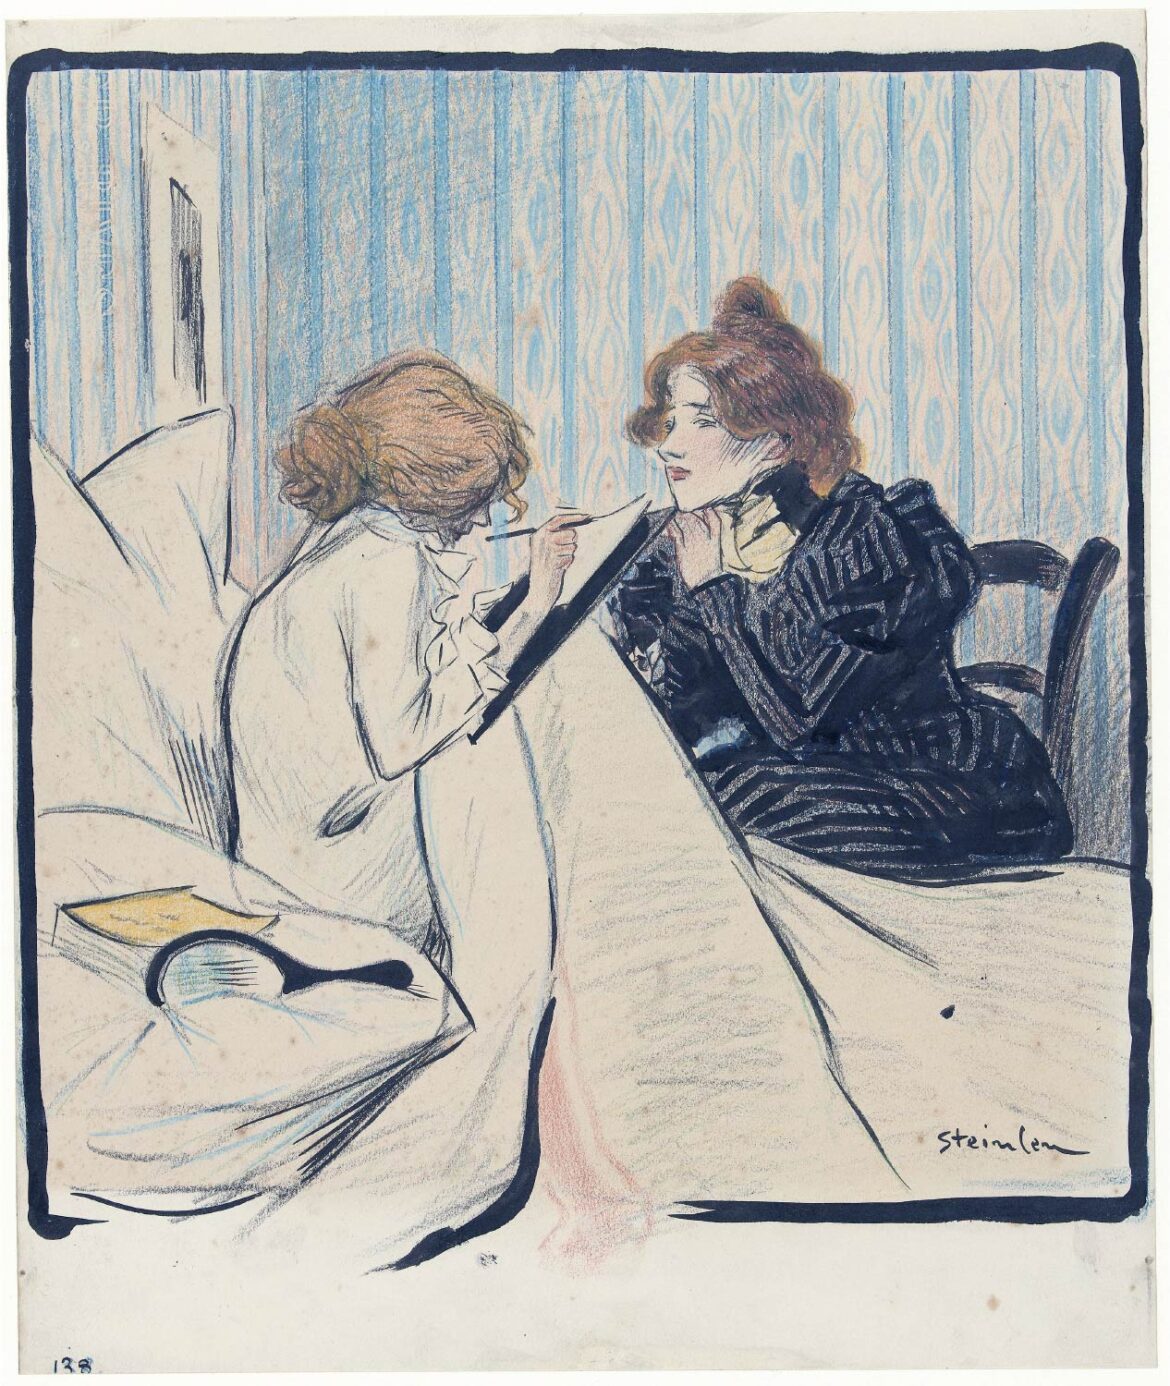 【無料壁紙】アレクサンドル・スタンラン「ドミトリーの二人の女性 (1892-1897)」 / Alexandre Steinlen_Twee vrouwen in een slaapvertrek (1892-1897)